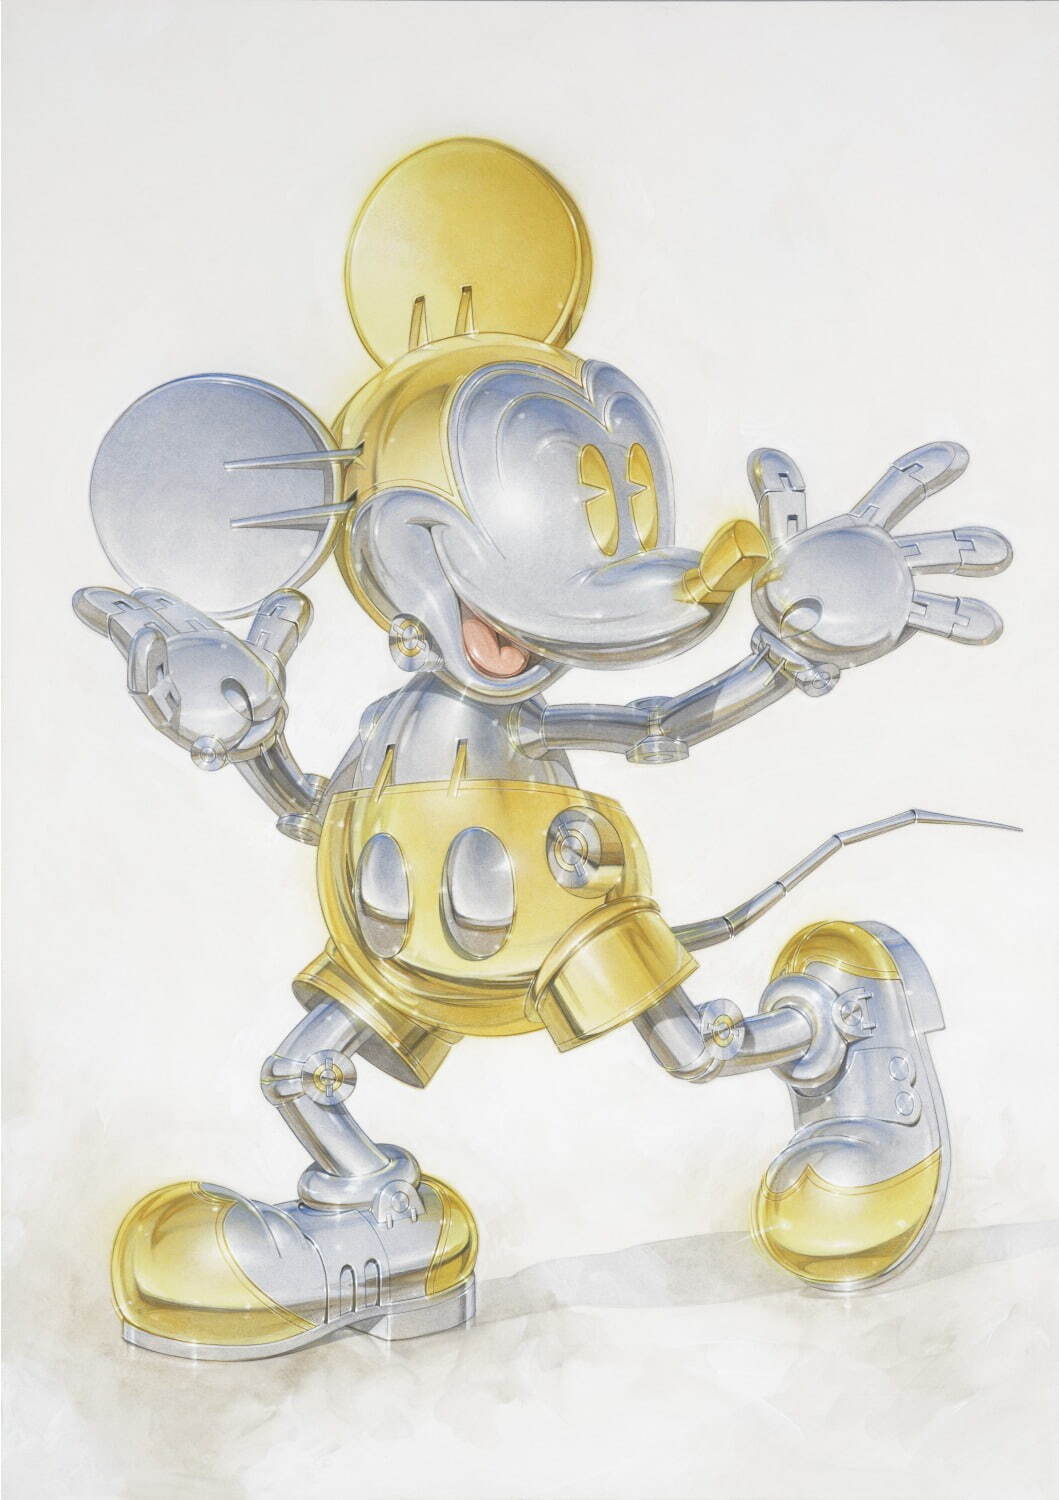 designed by Hajime Sorayama
nanzuka
「Mickey Mouse Now and Future」展 渋谷パルコ会場より